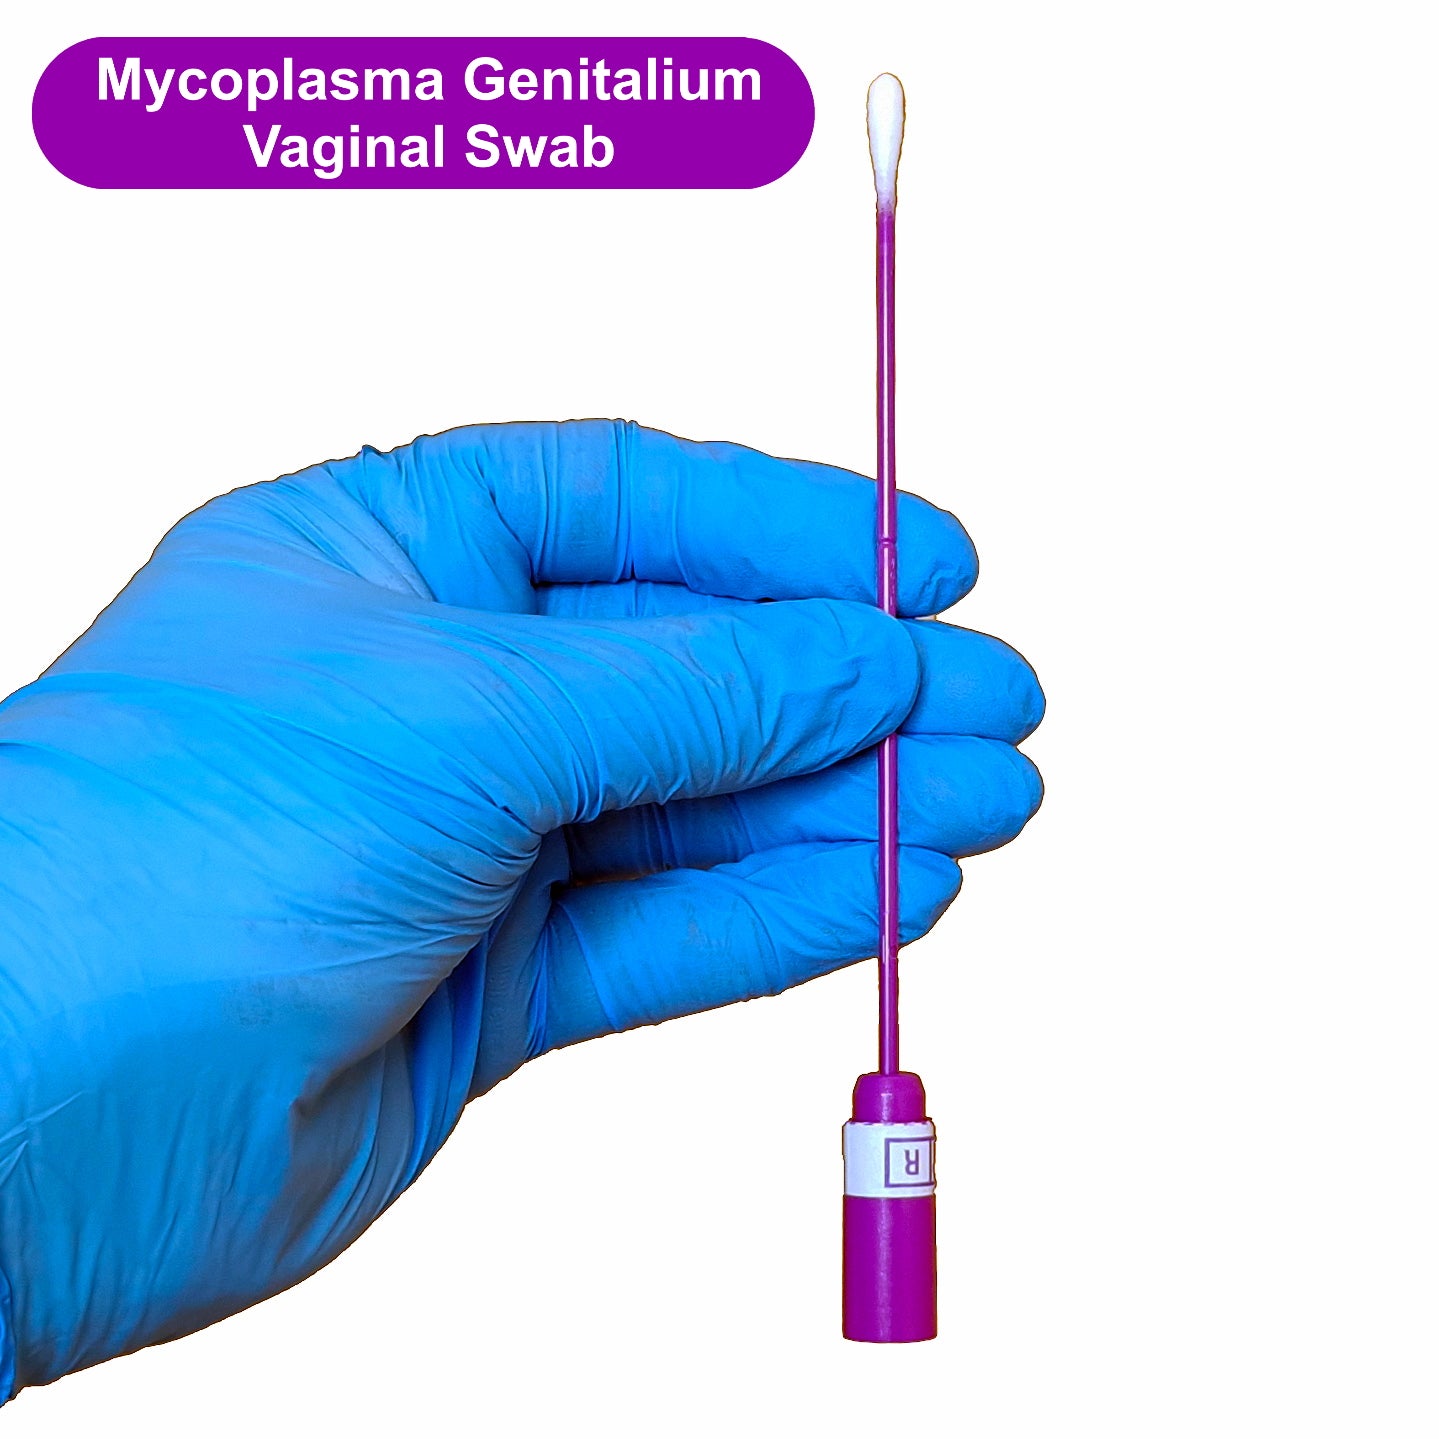 Myocoplasma Genitalium Vaginal Swab